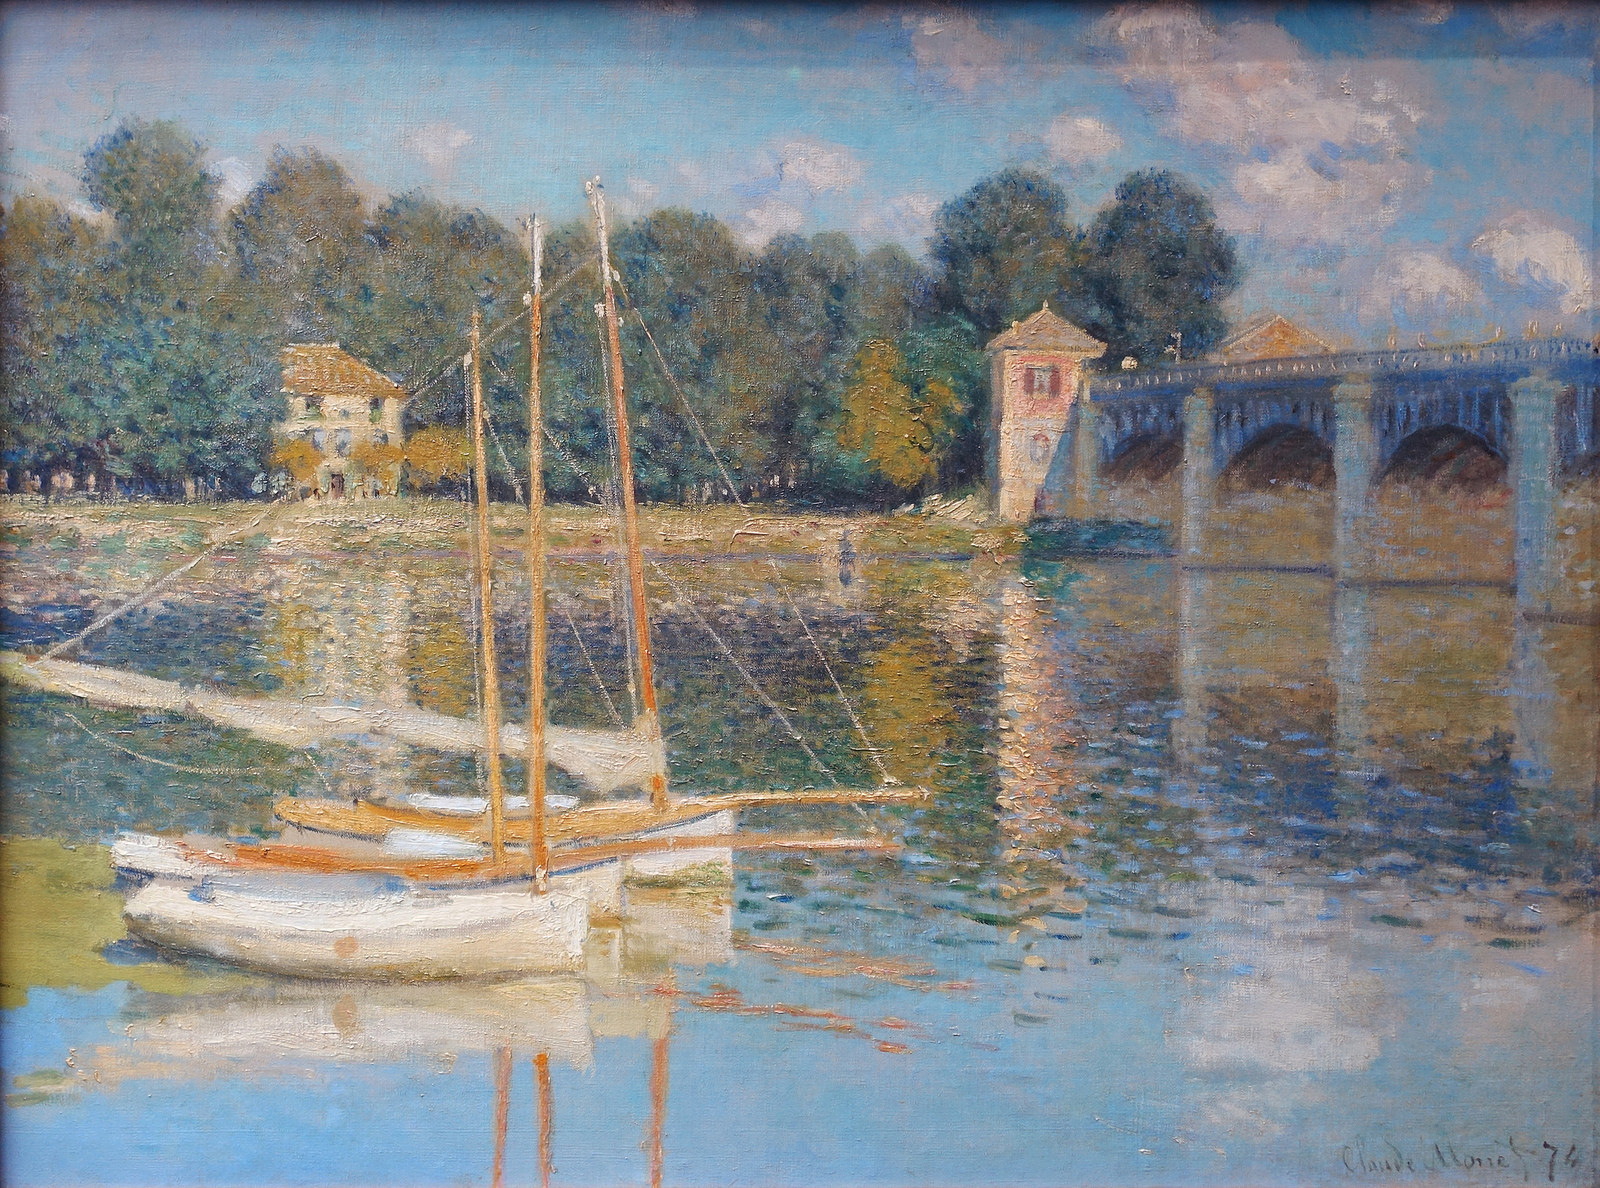 Claude Monet, The Argenteuil Bridge, 1874, oil on canvas, 60.5 x 80 cm (Musée d'Orsay, Paris)